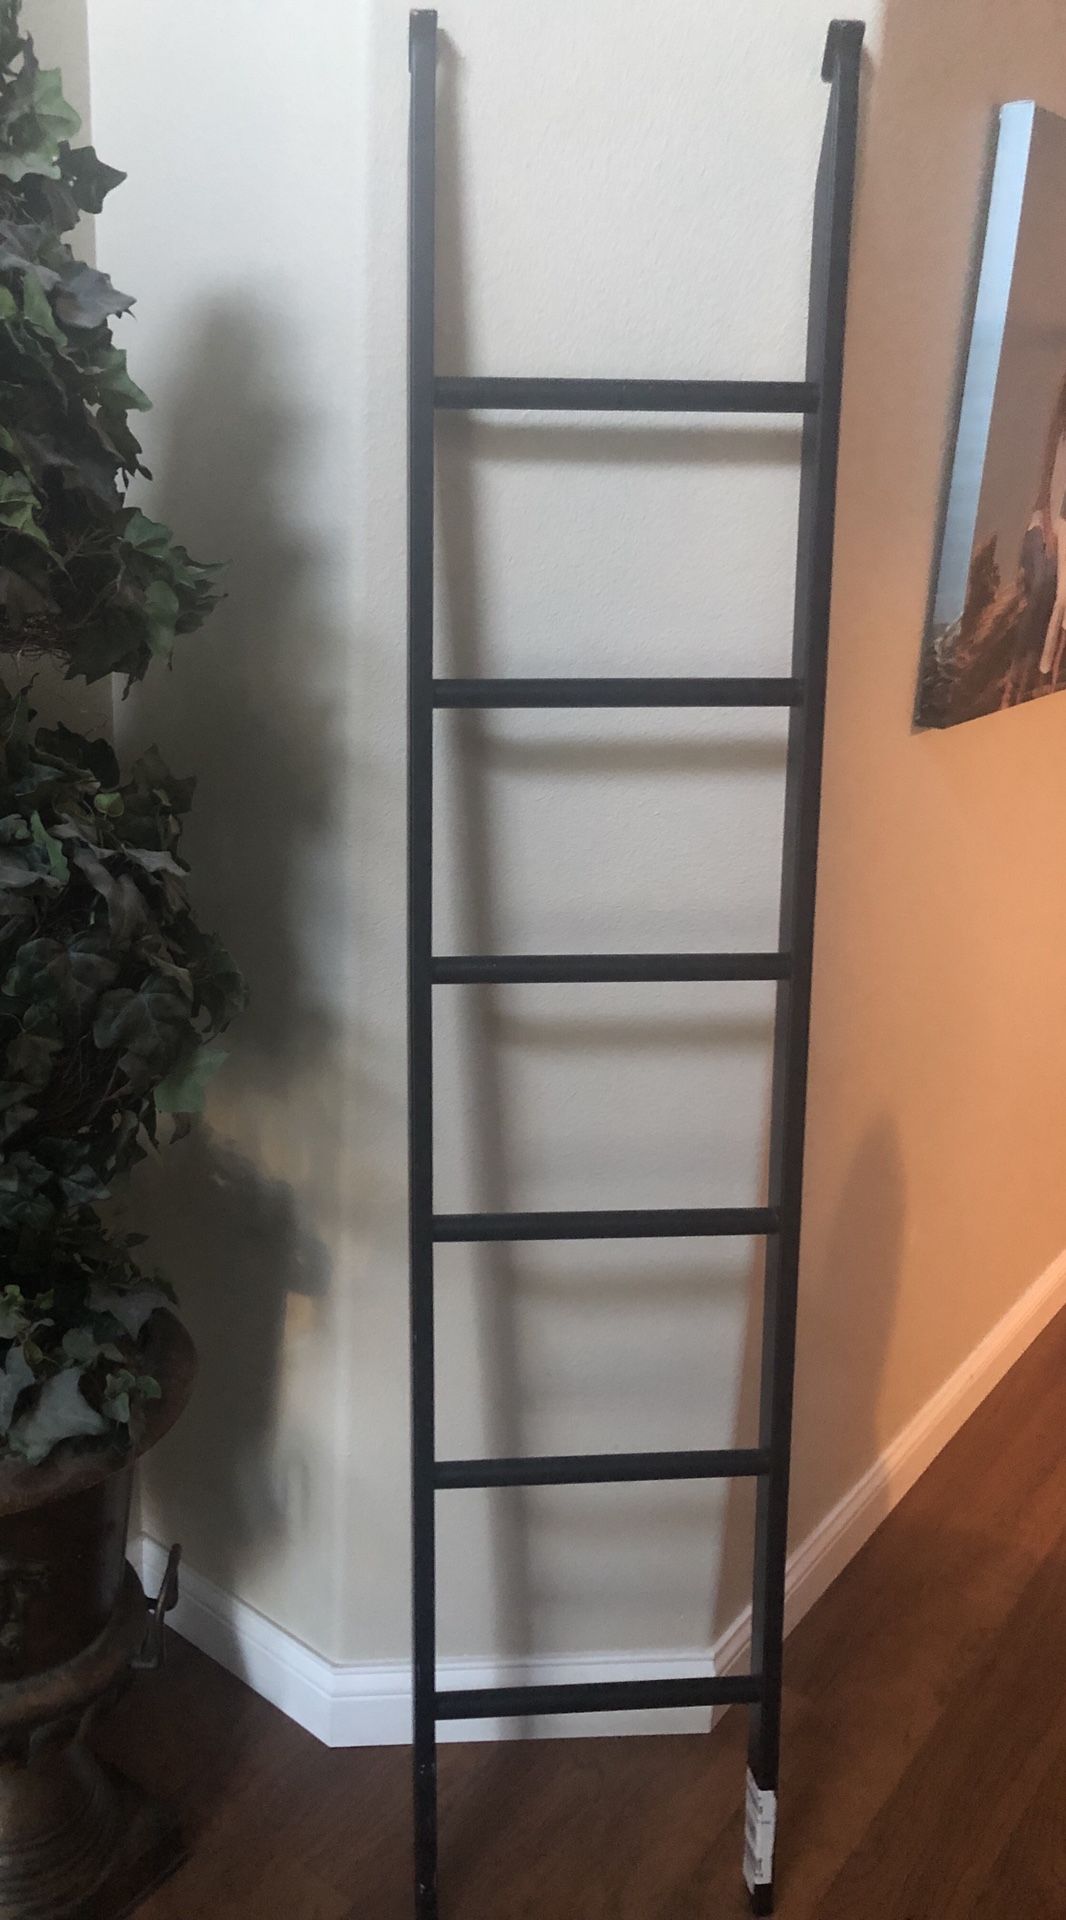 Ladder — Black metal bunk bed ladder